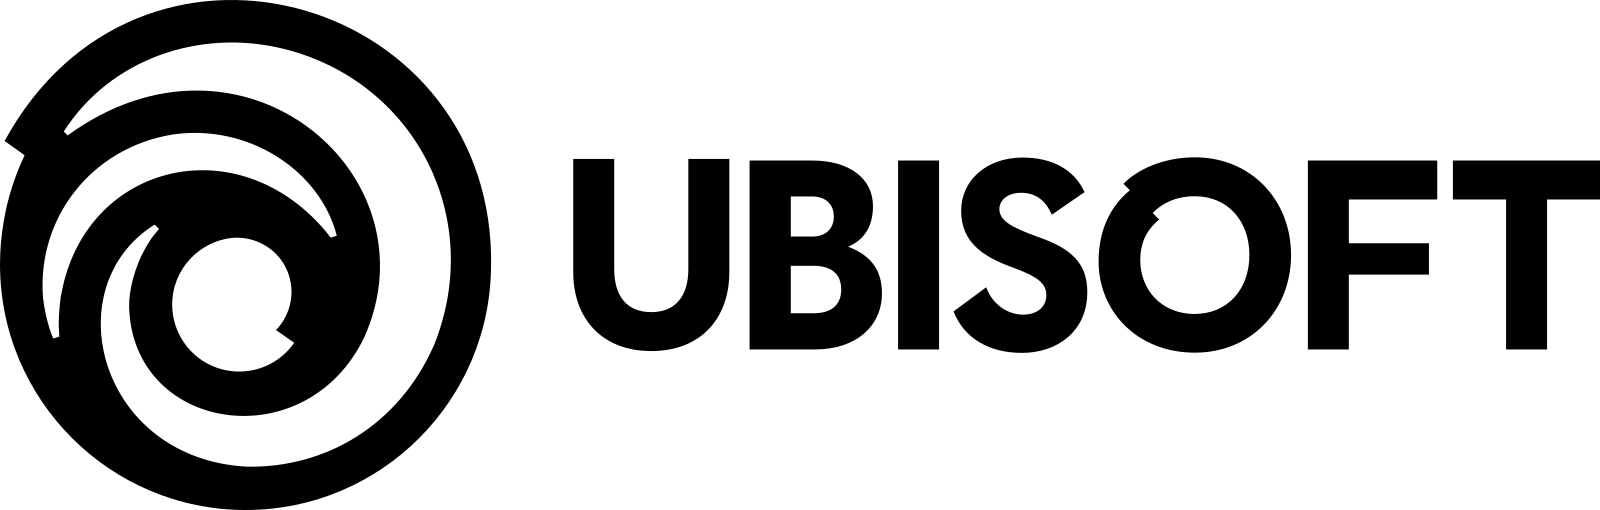 Ubisoft logo.